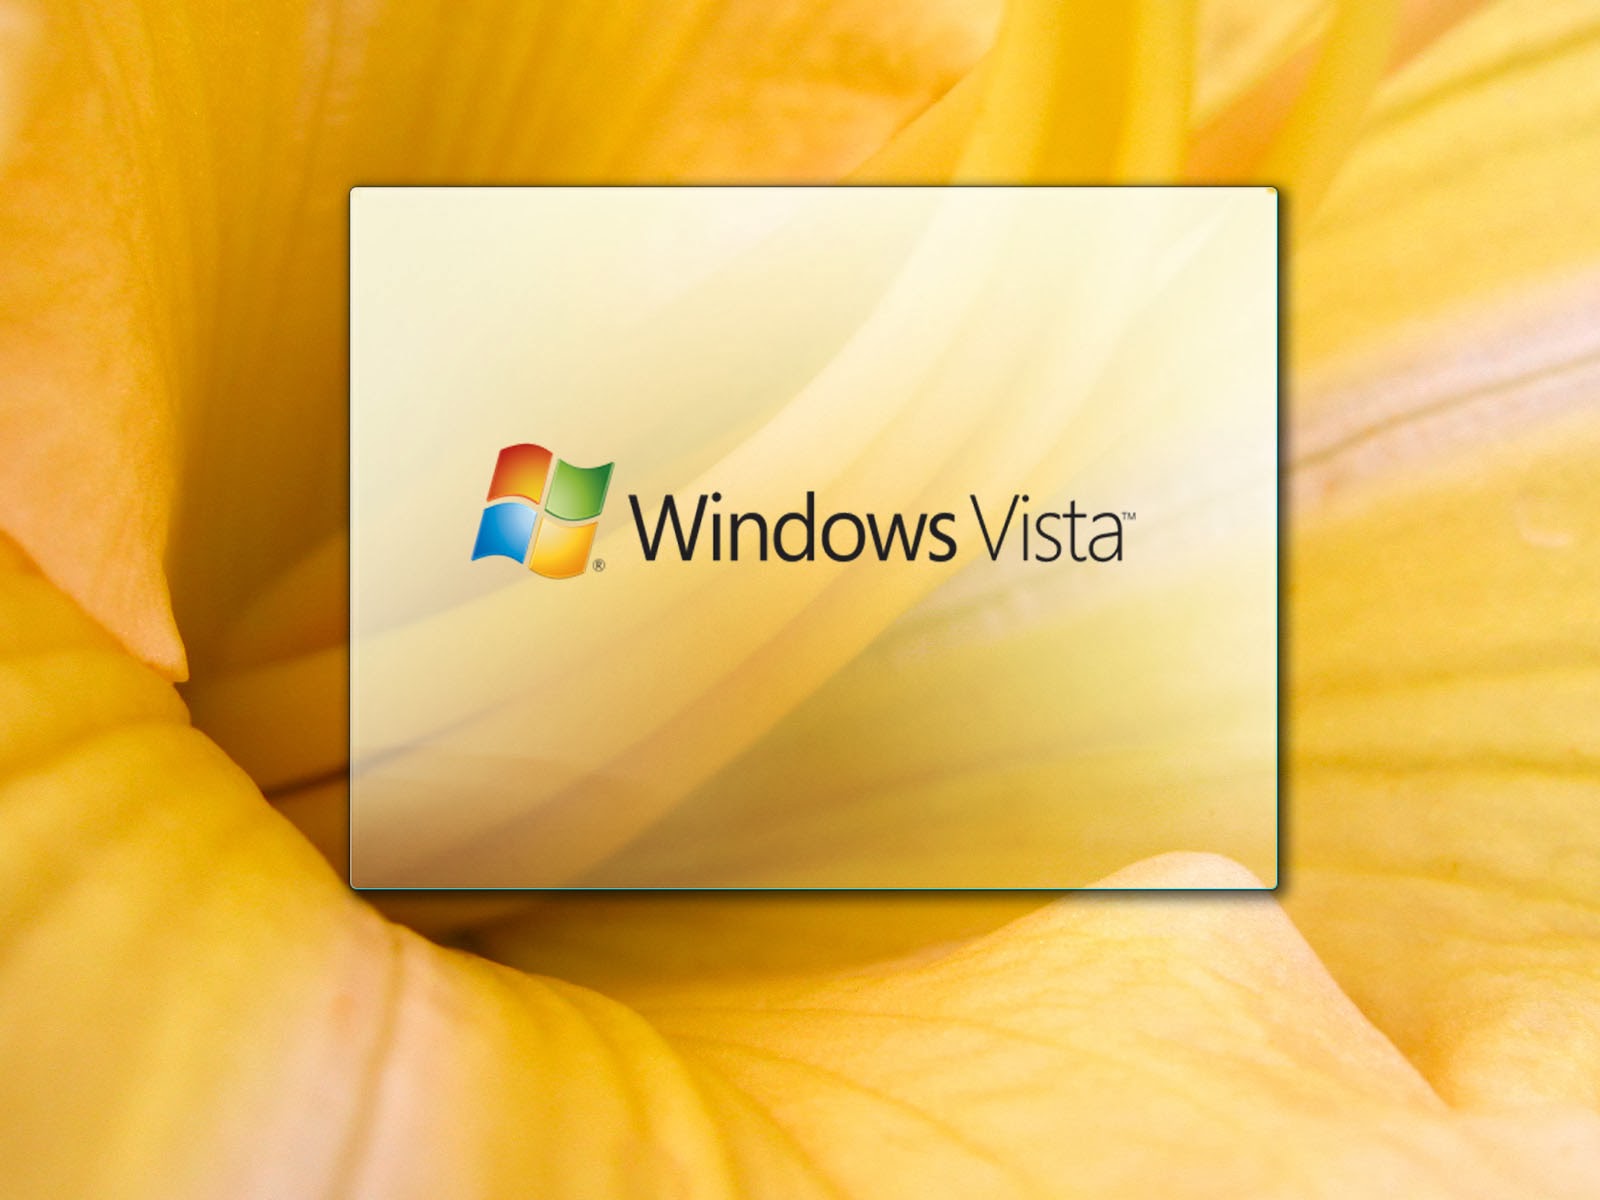 Aero Windows Vista Puter Wallpaper Colorful Multi